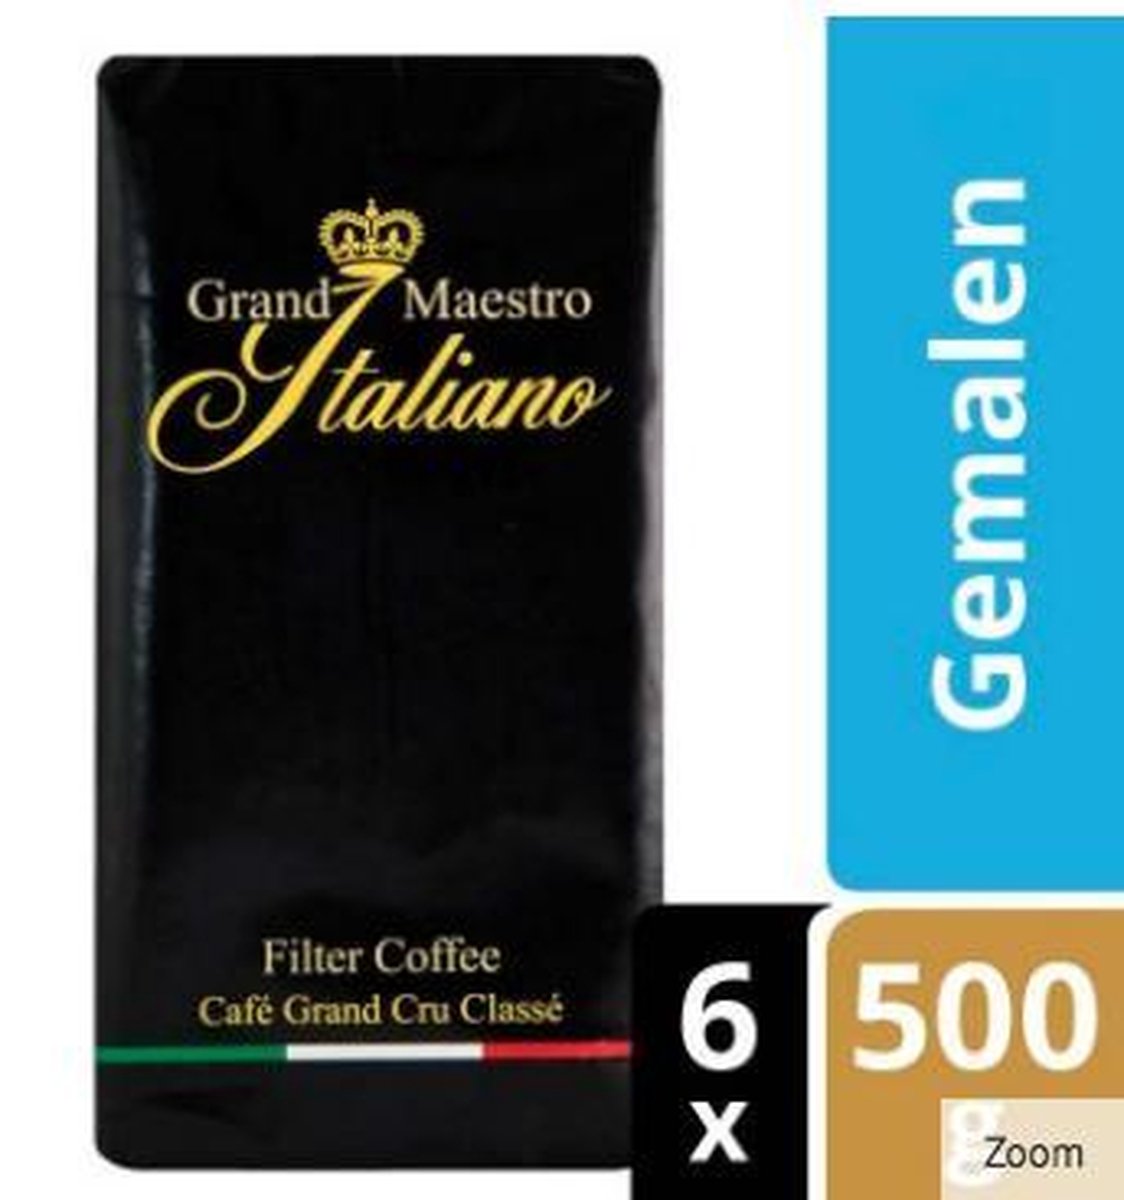 Grand Maestro Italiano - Snelfiltermaling 6 x 500g